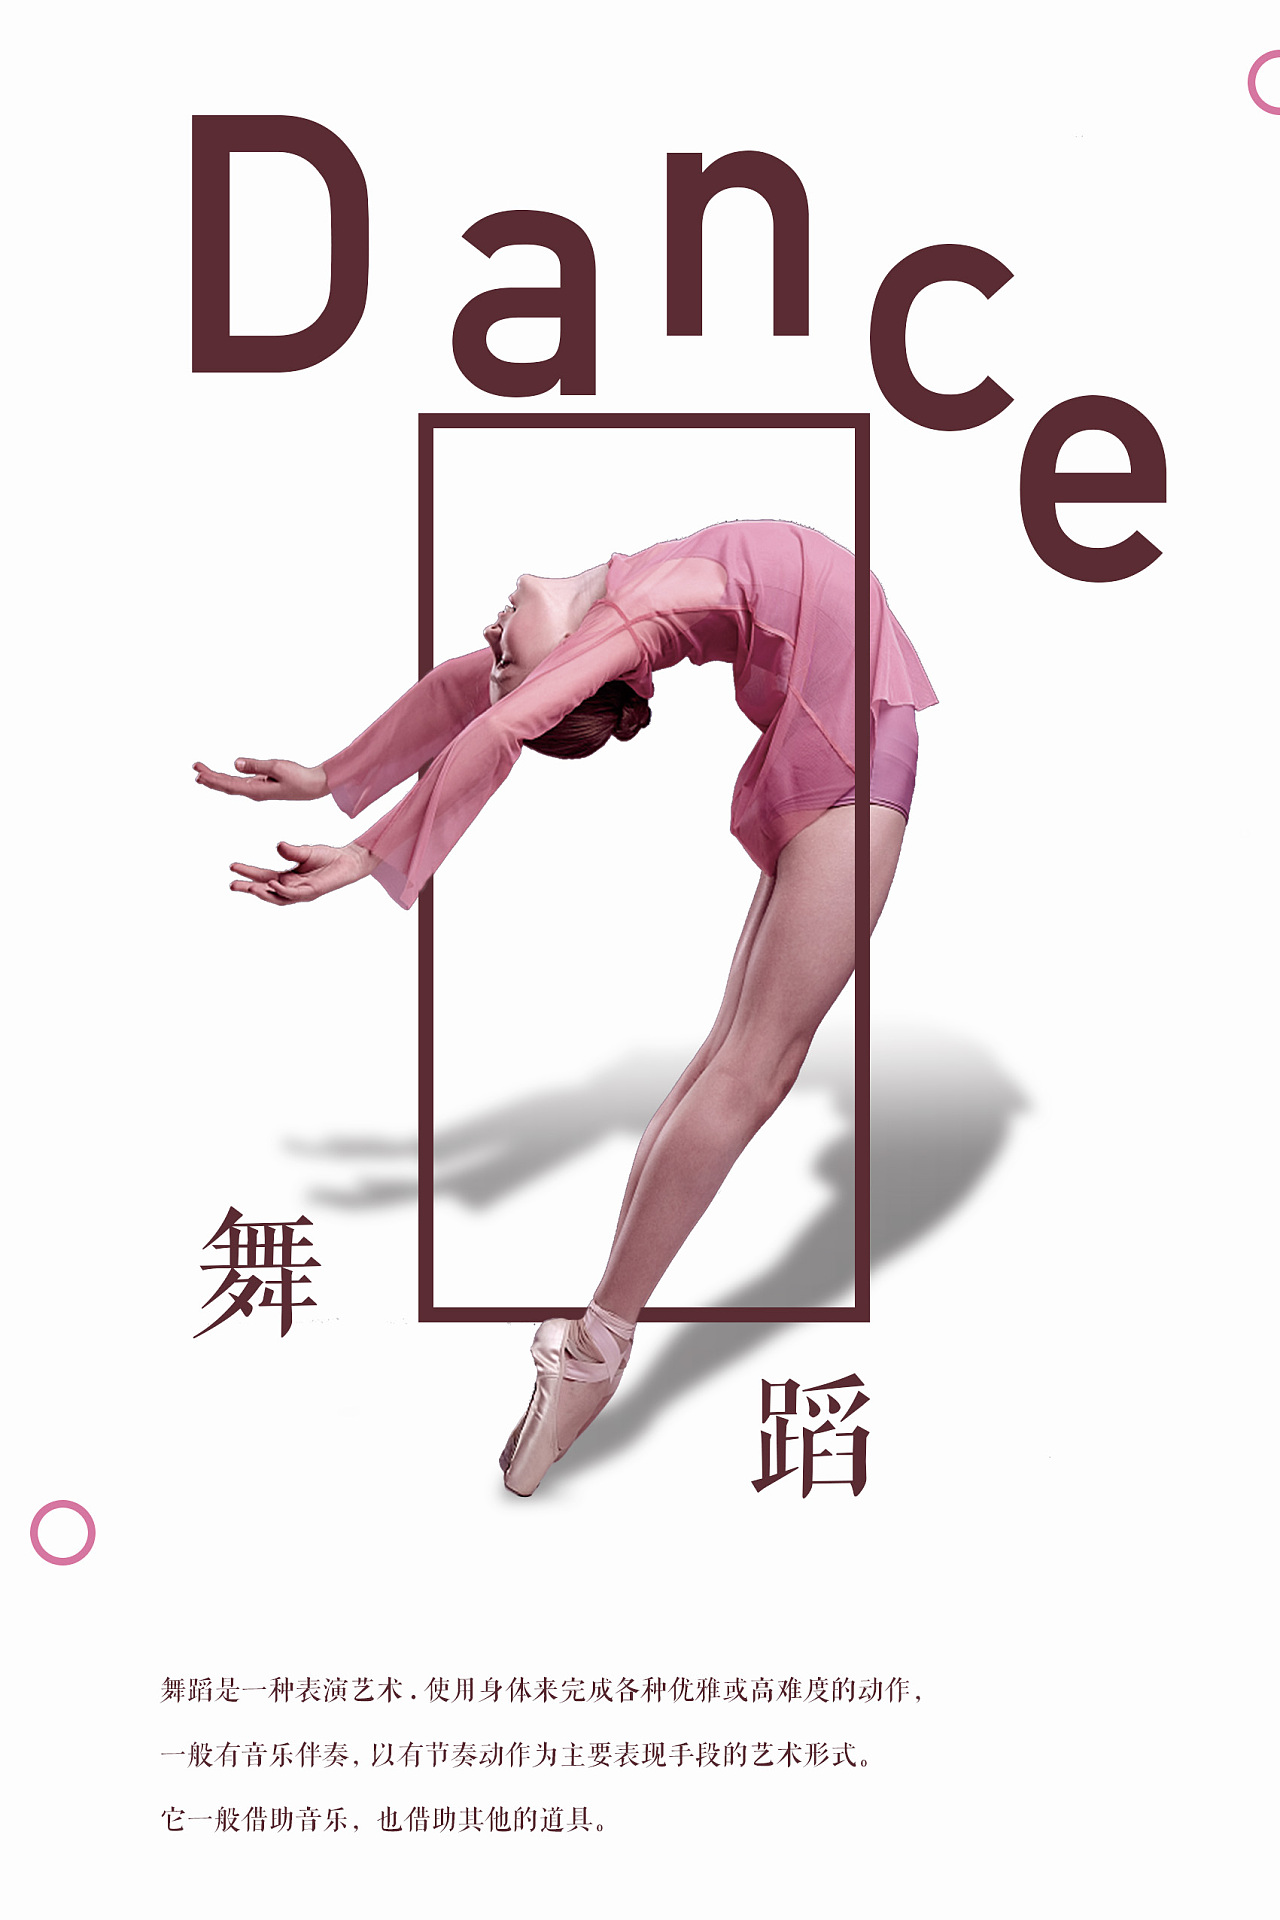 2017年高清无水印的唯美舞蹈壁纸 - 舞蹈图片 - Powered by Discuz!